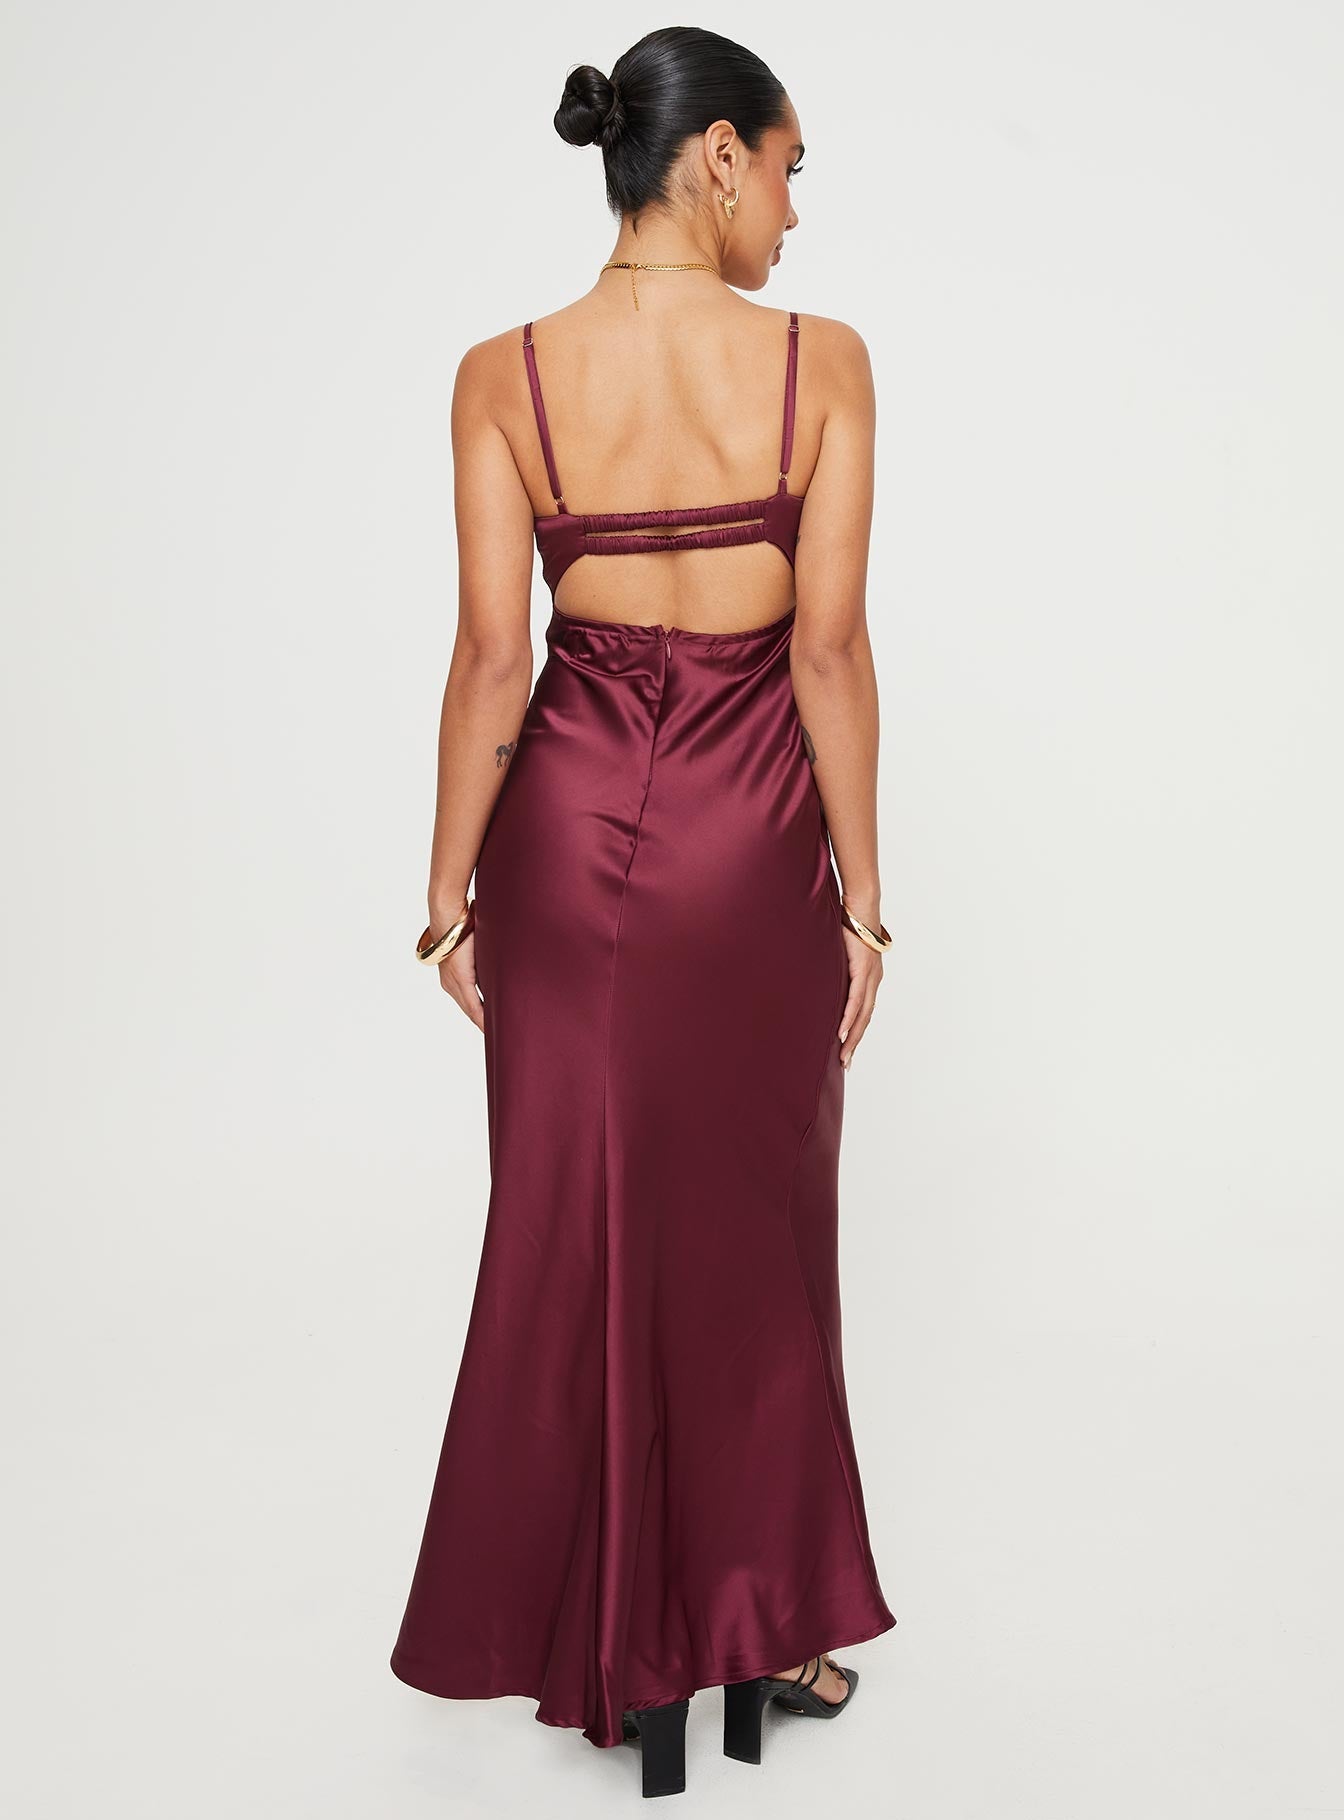 Shop Formal Dress - Fadyen Bias Cut Maxi Dress Burgundy featured image